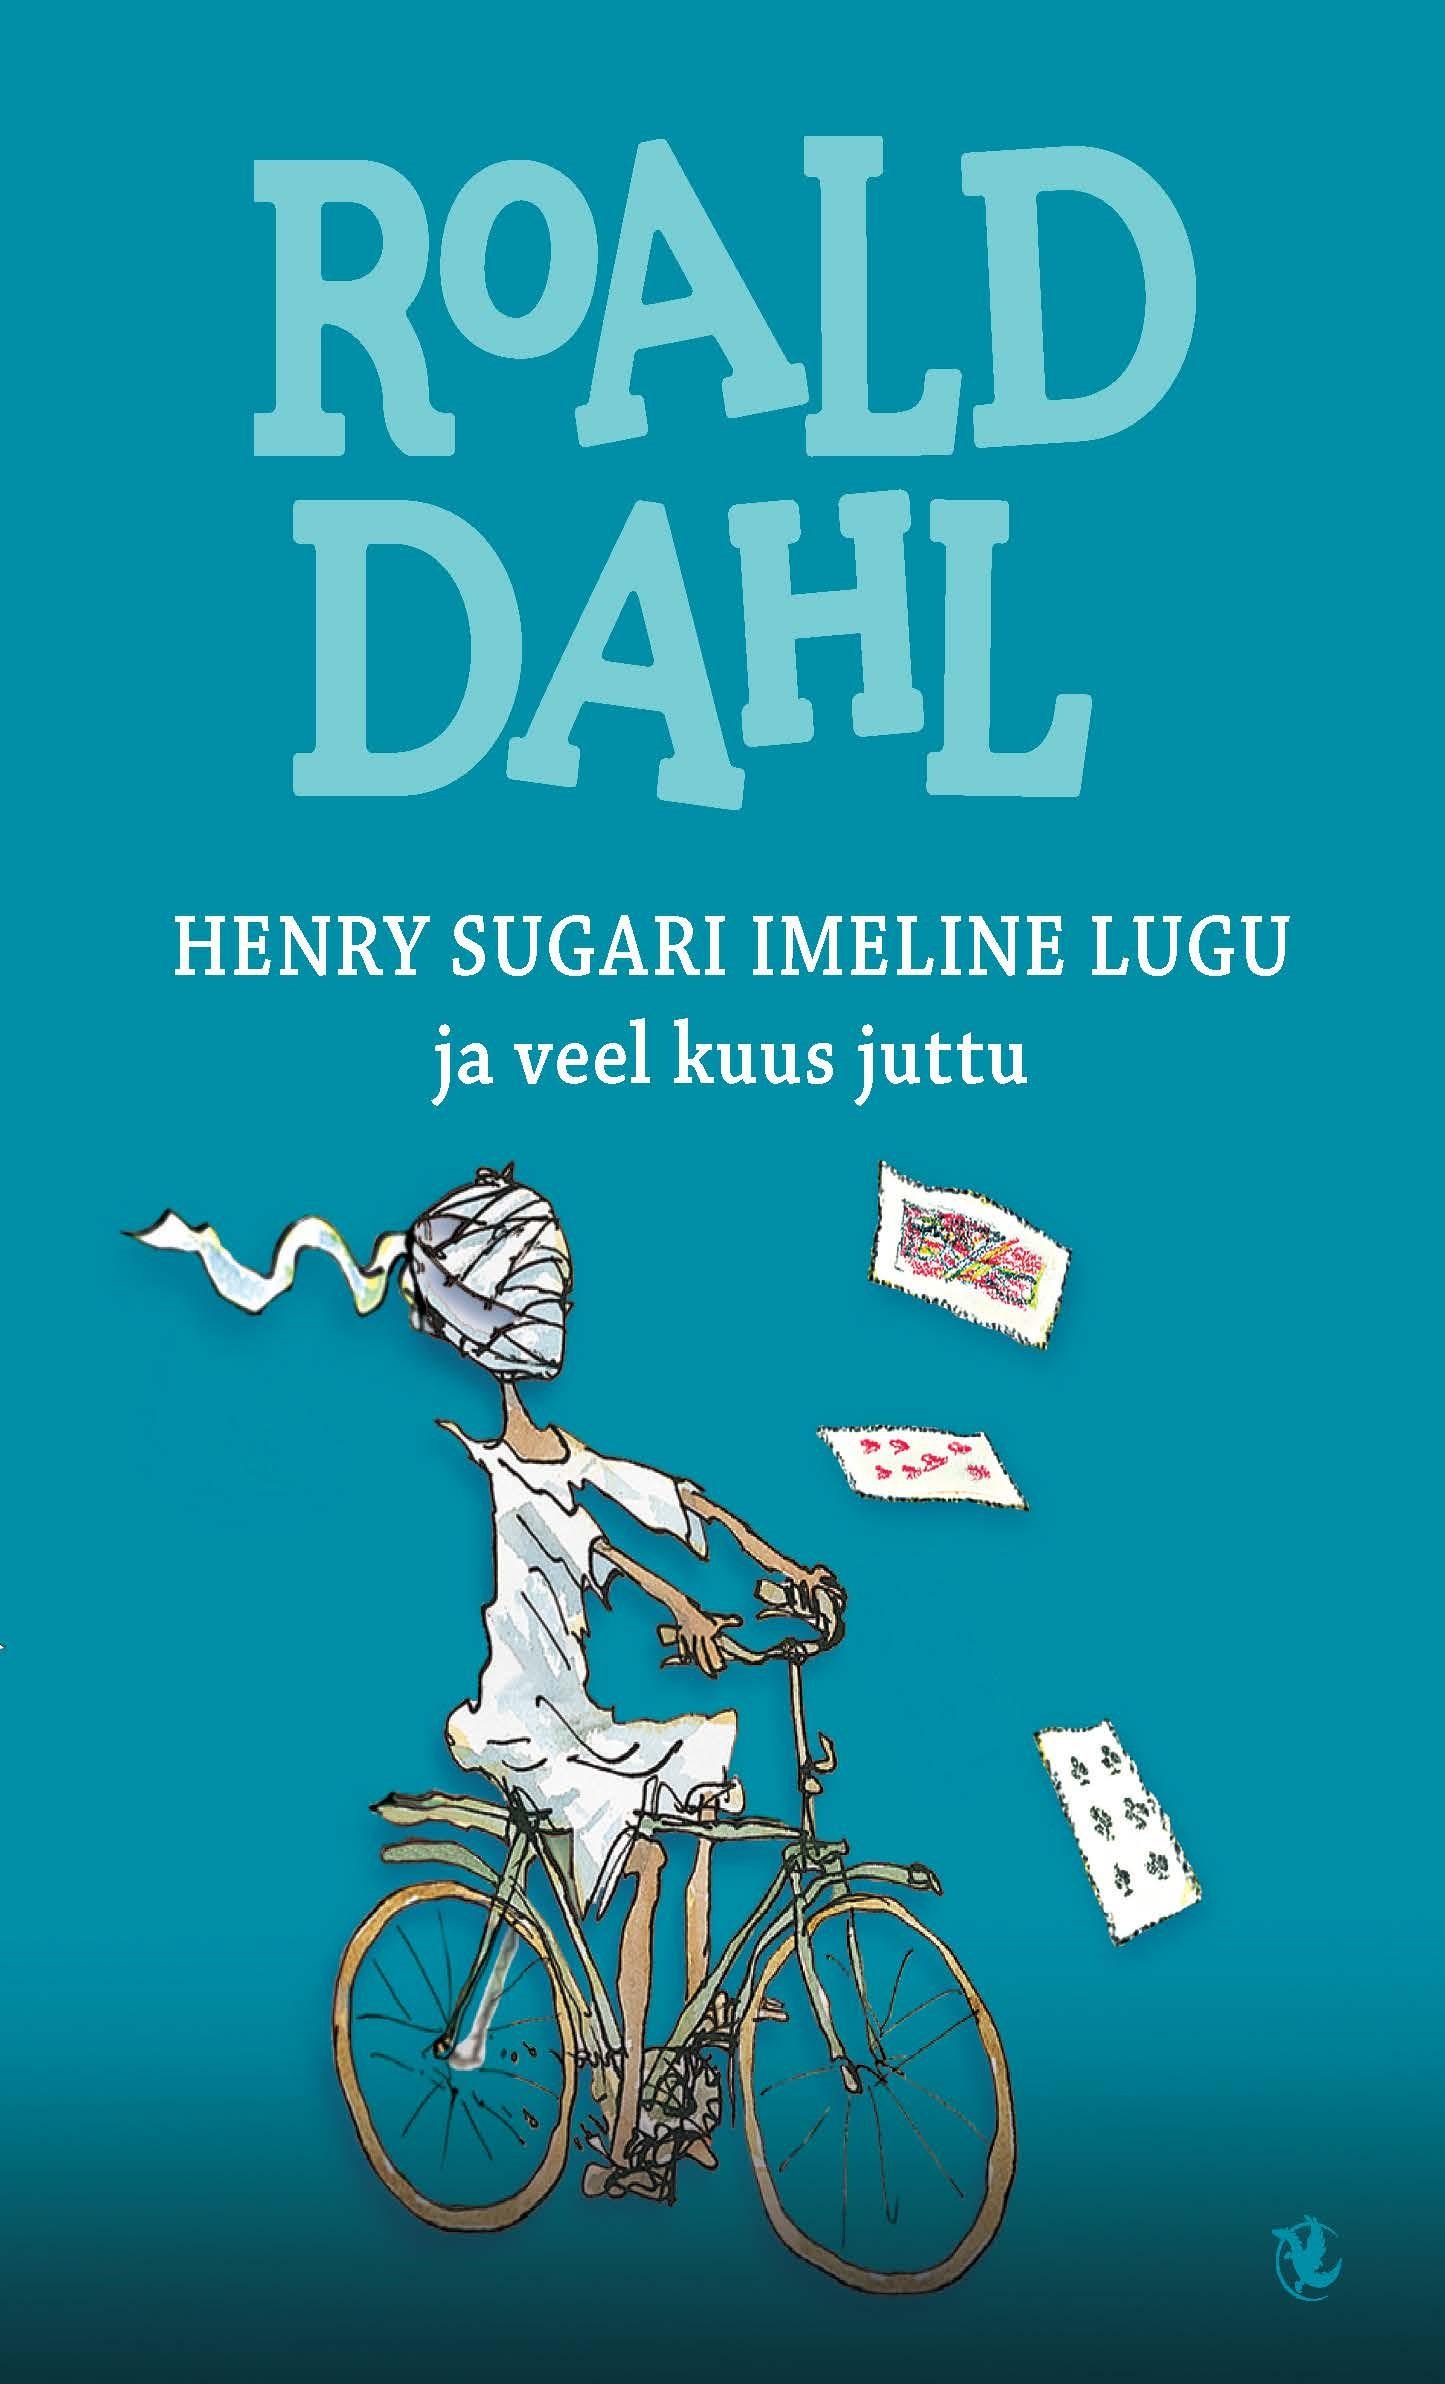 Henry Sugari imeline lugu ja veel kuus juttu